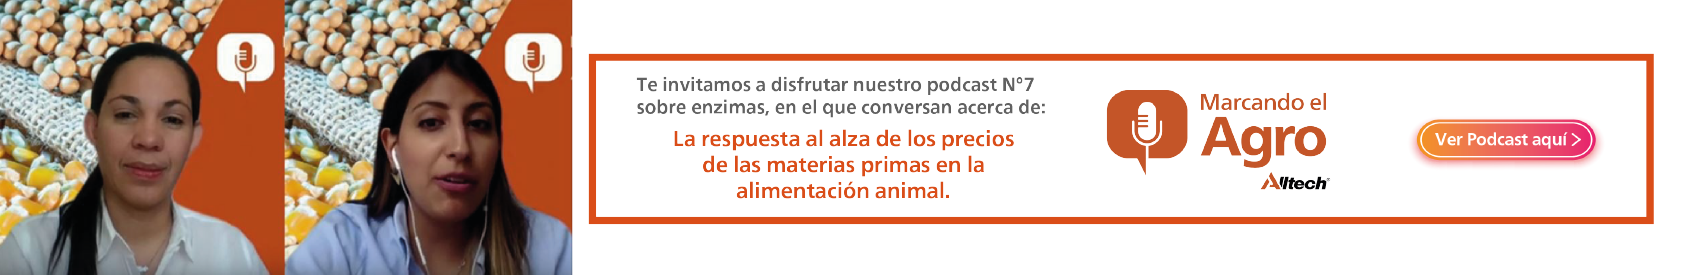 Podcast Precios de materias primas en la alimentación animal.